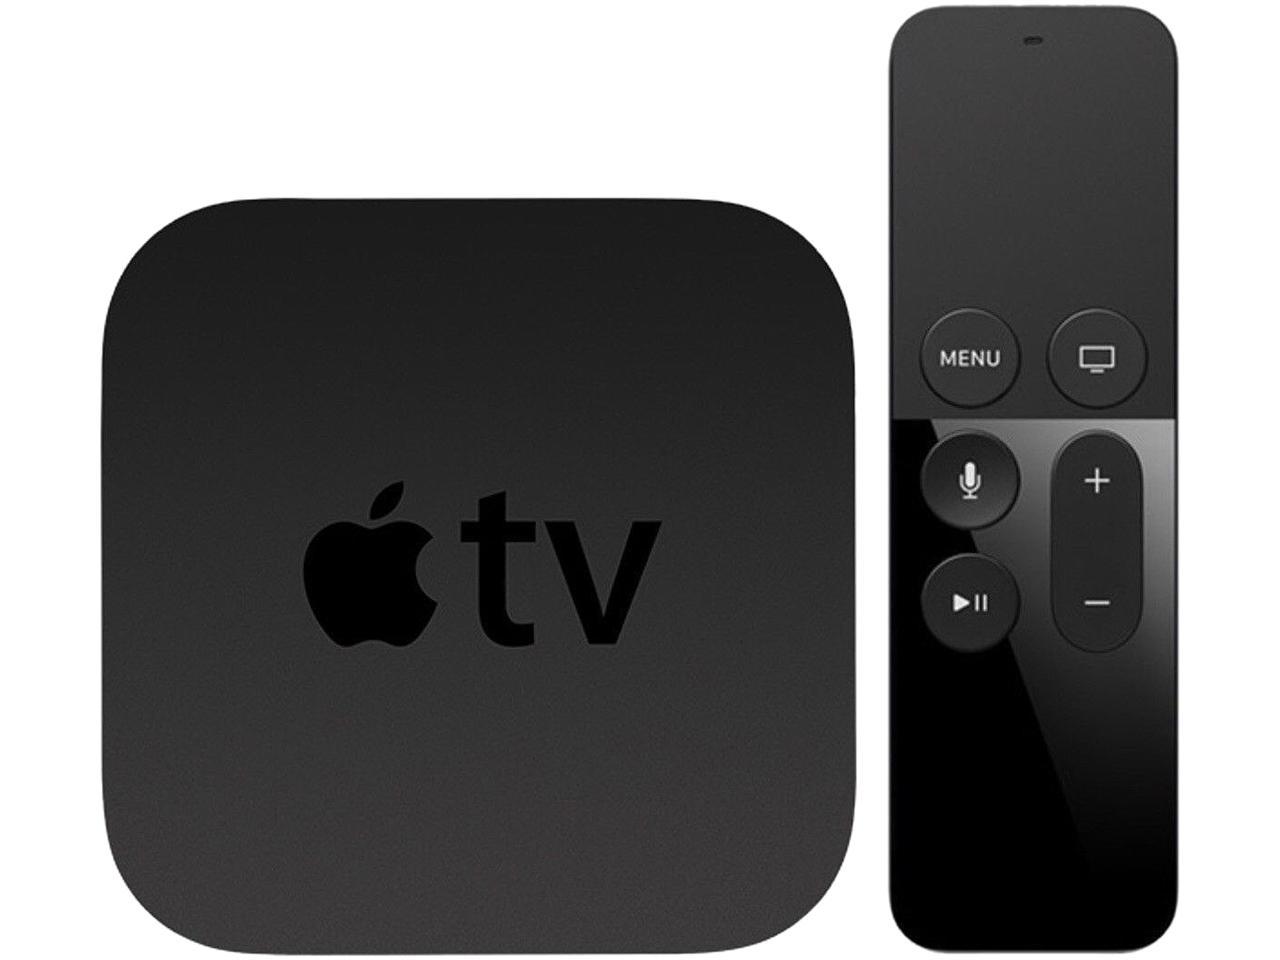 Used - Good: Apple TV 4K (64GB) - Newegg.com